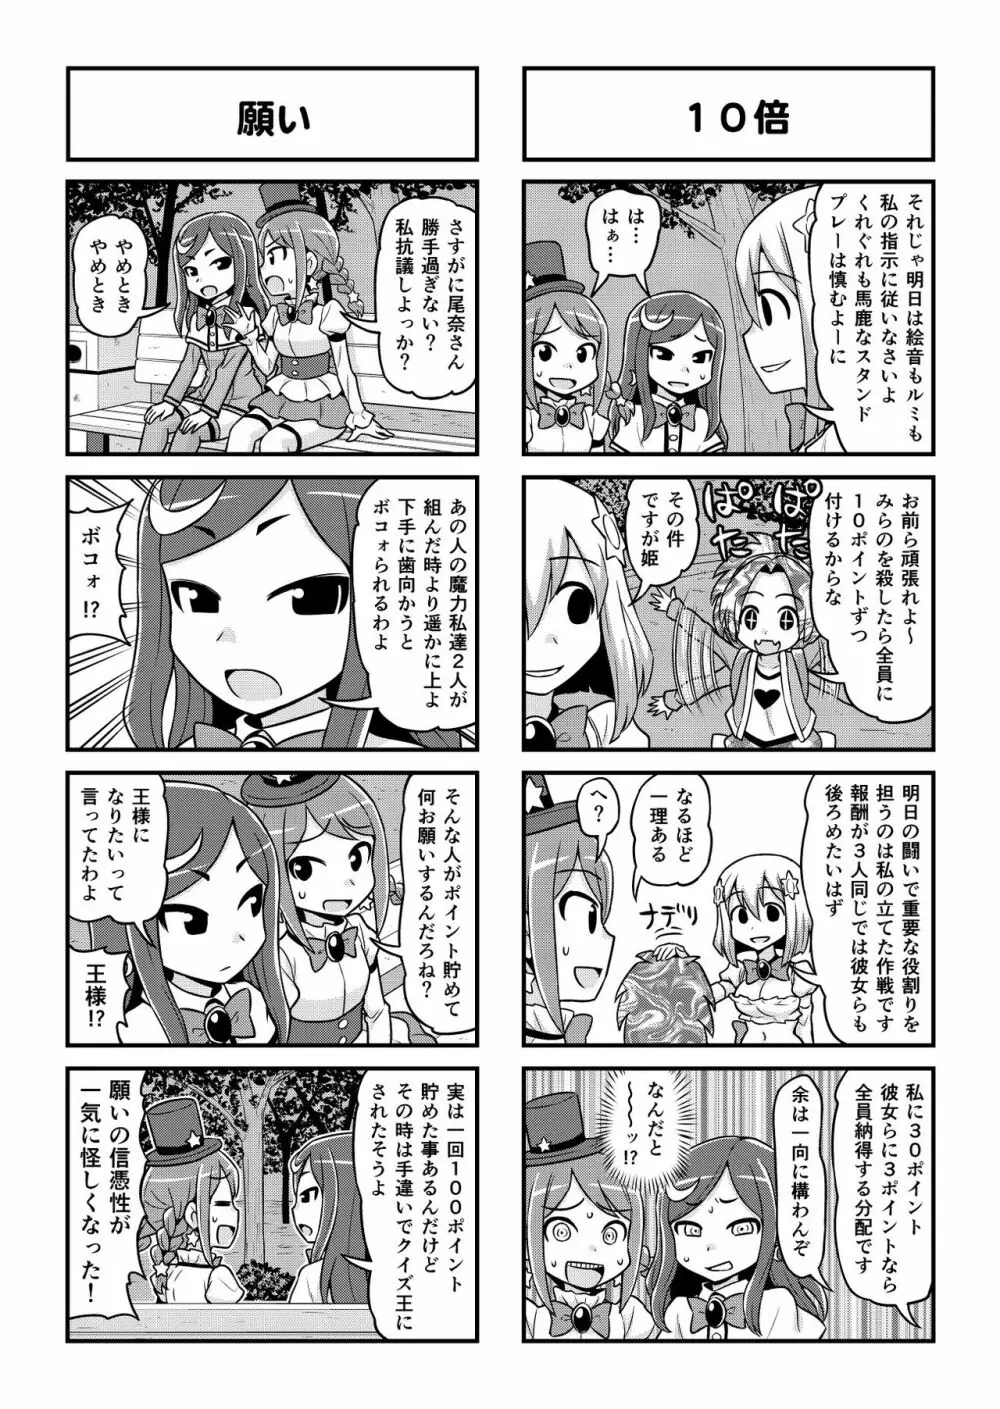 のんきBOY 1-48 - page394